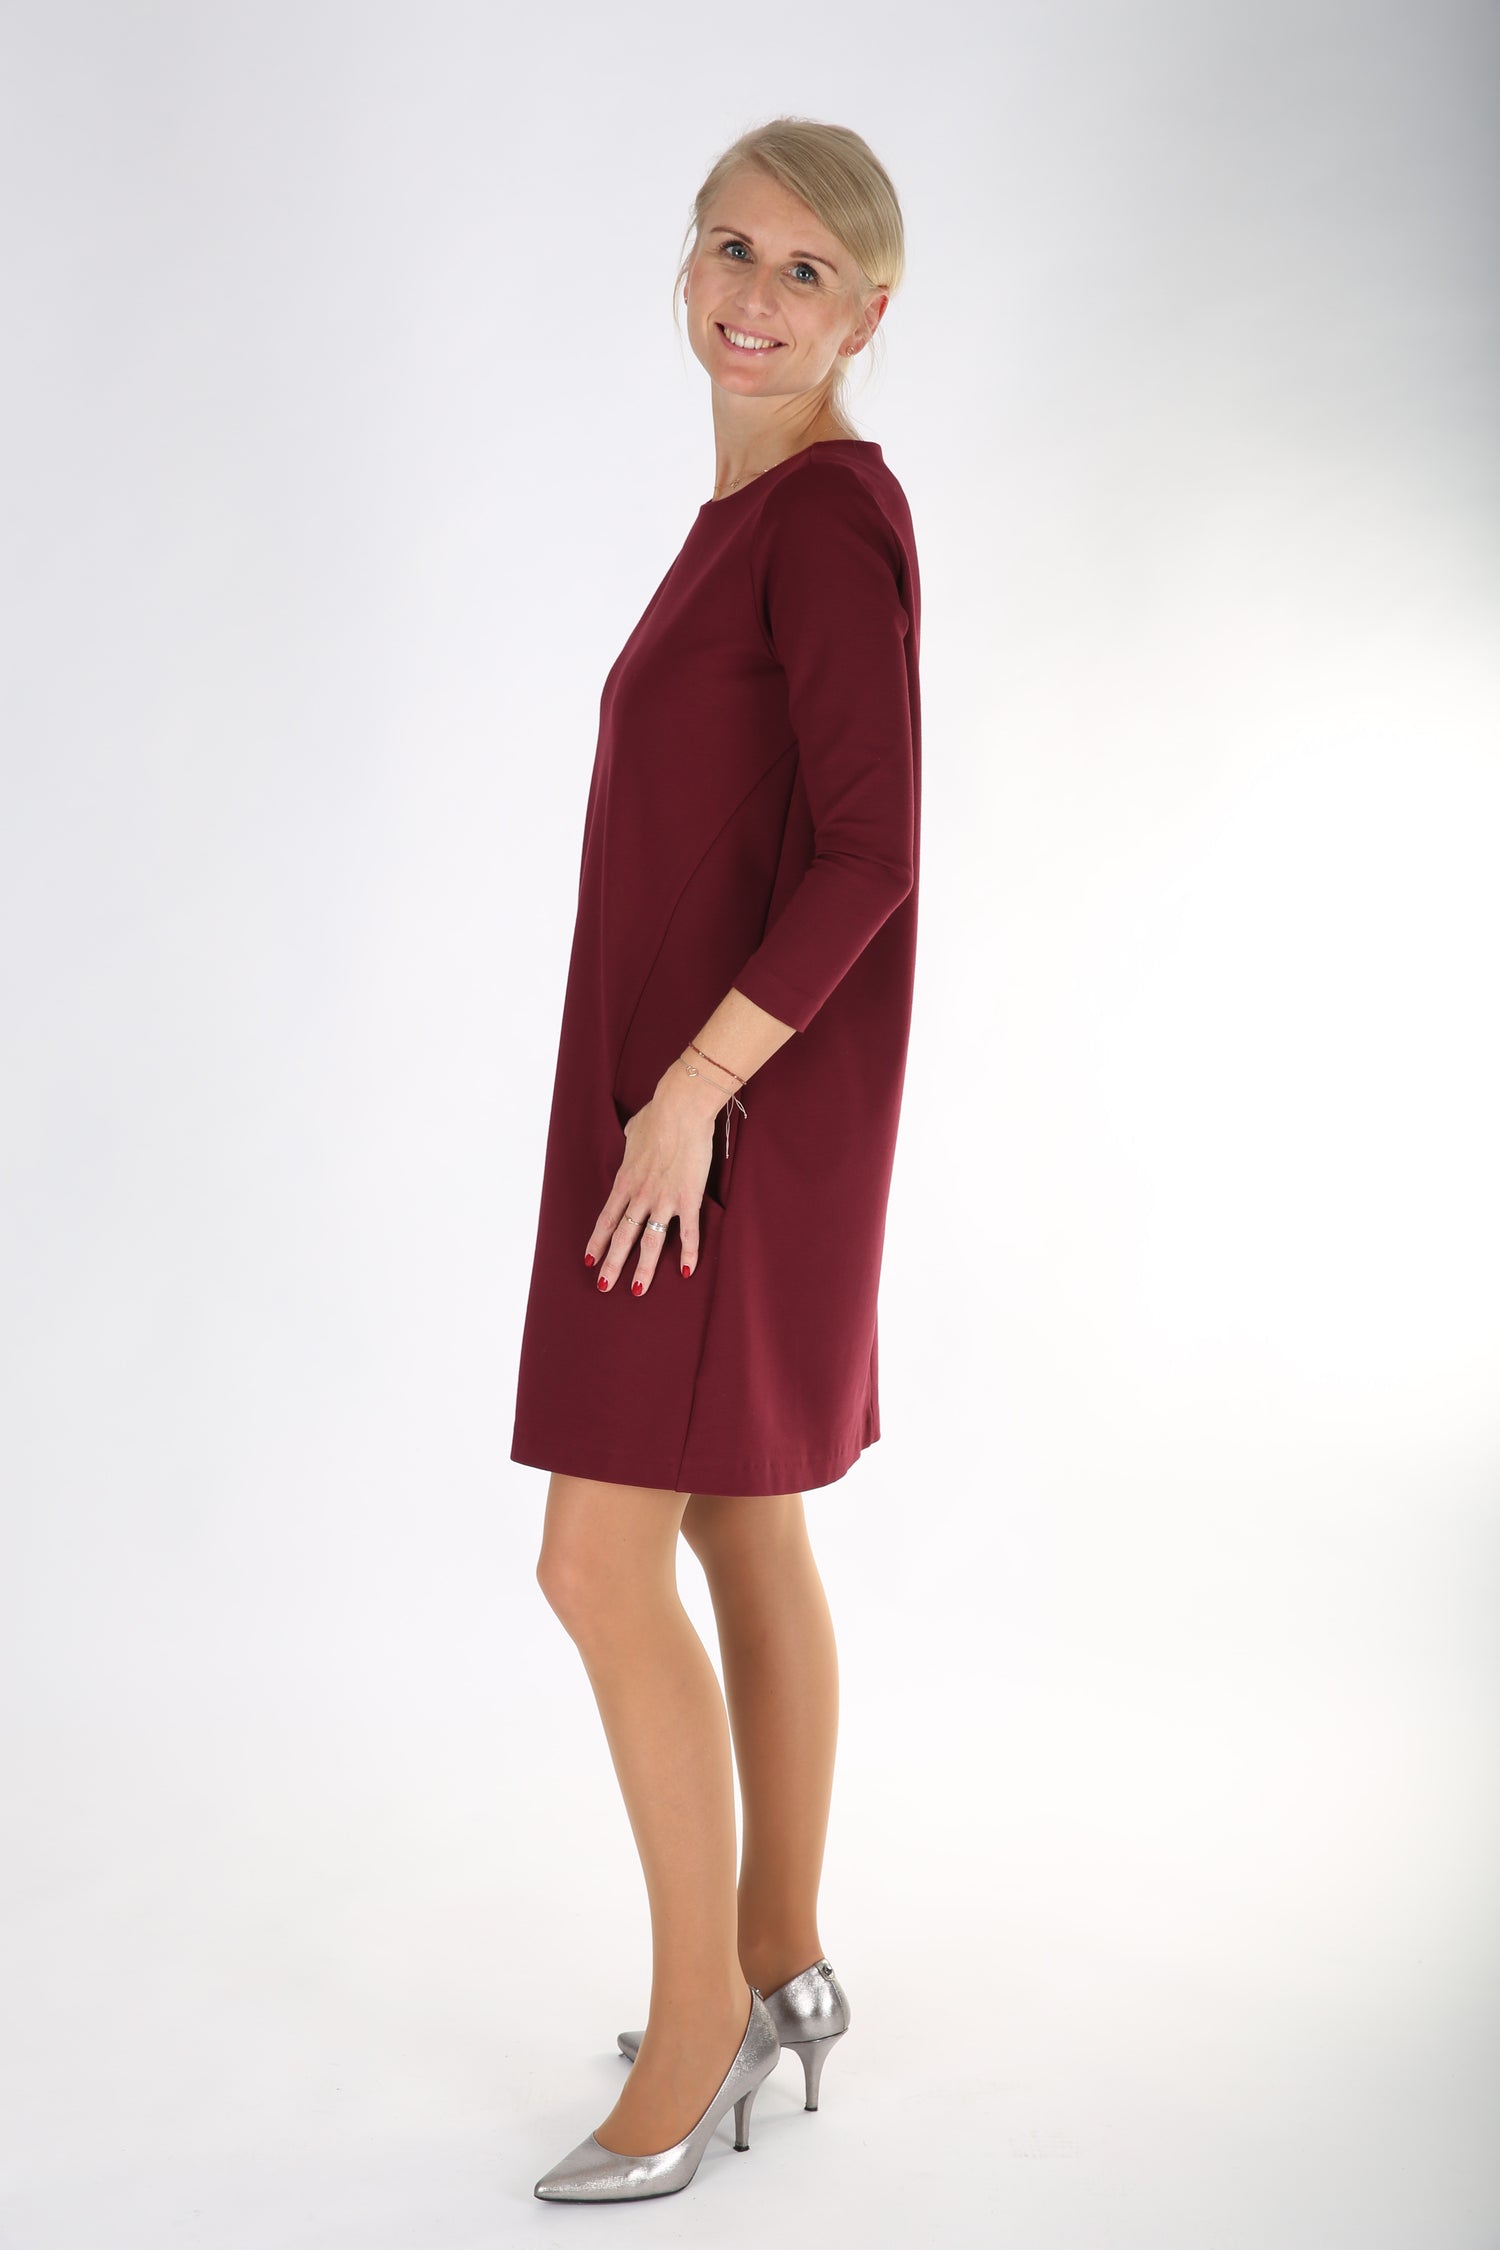 Einfaches Kleid nähen Damen “ALEXA” – SCHNITT pdf Download